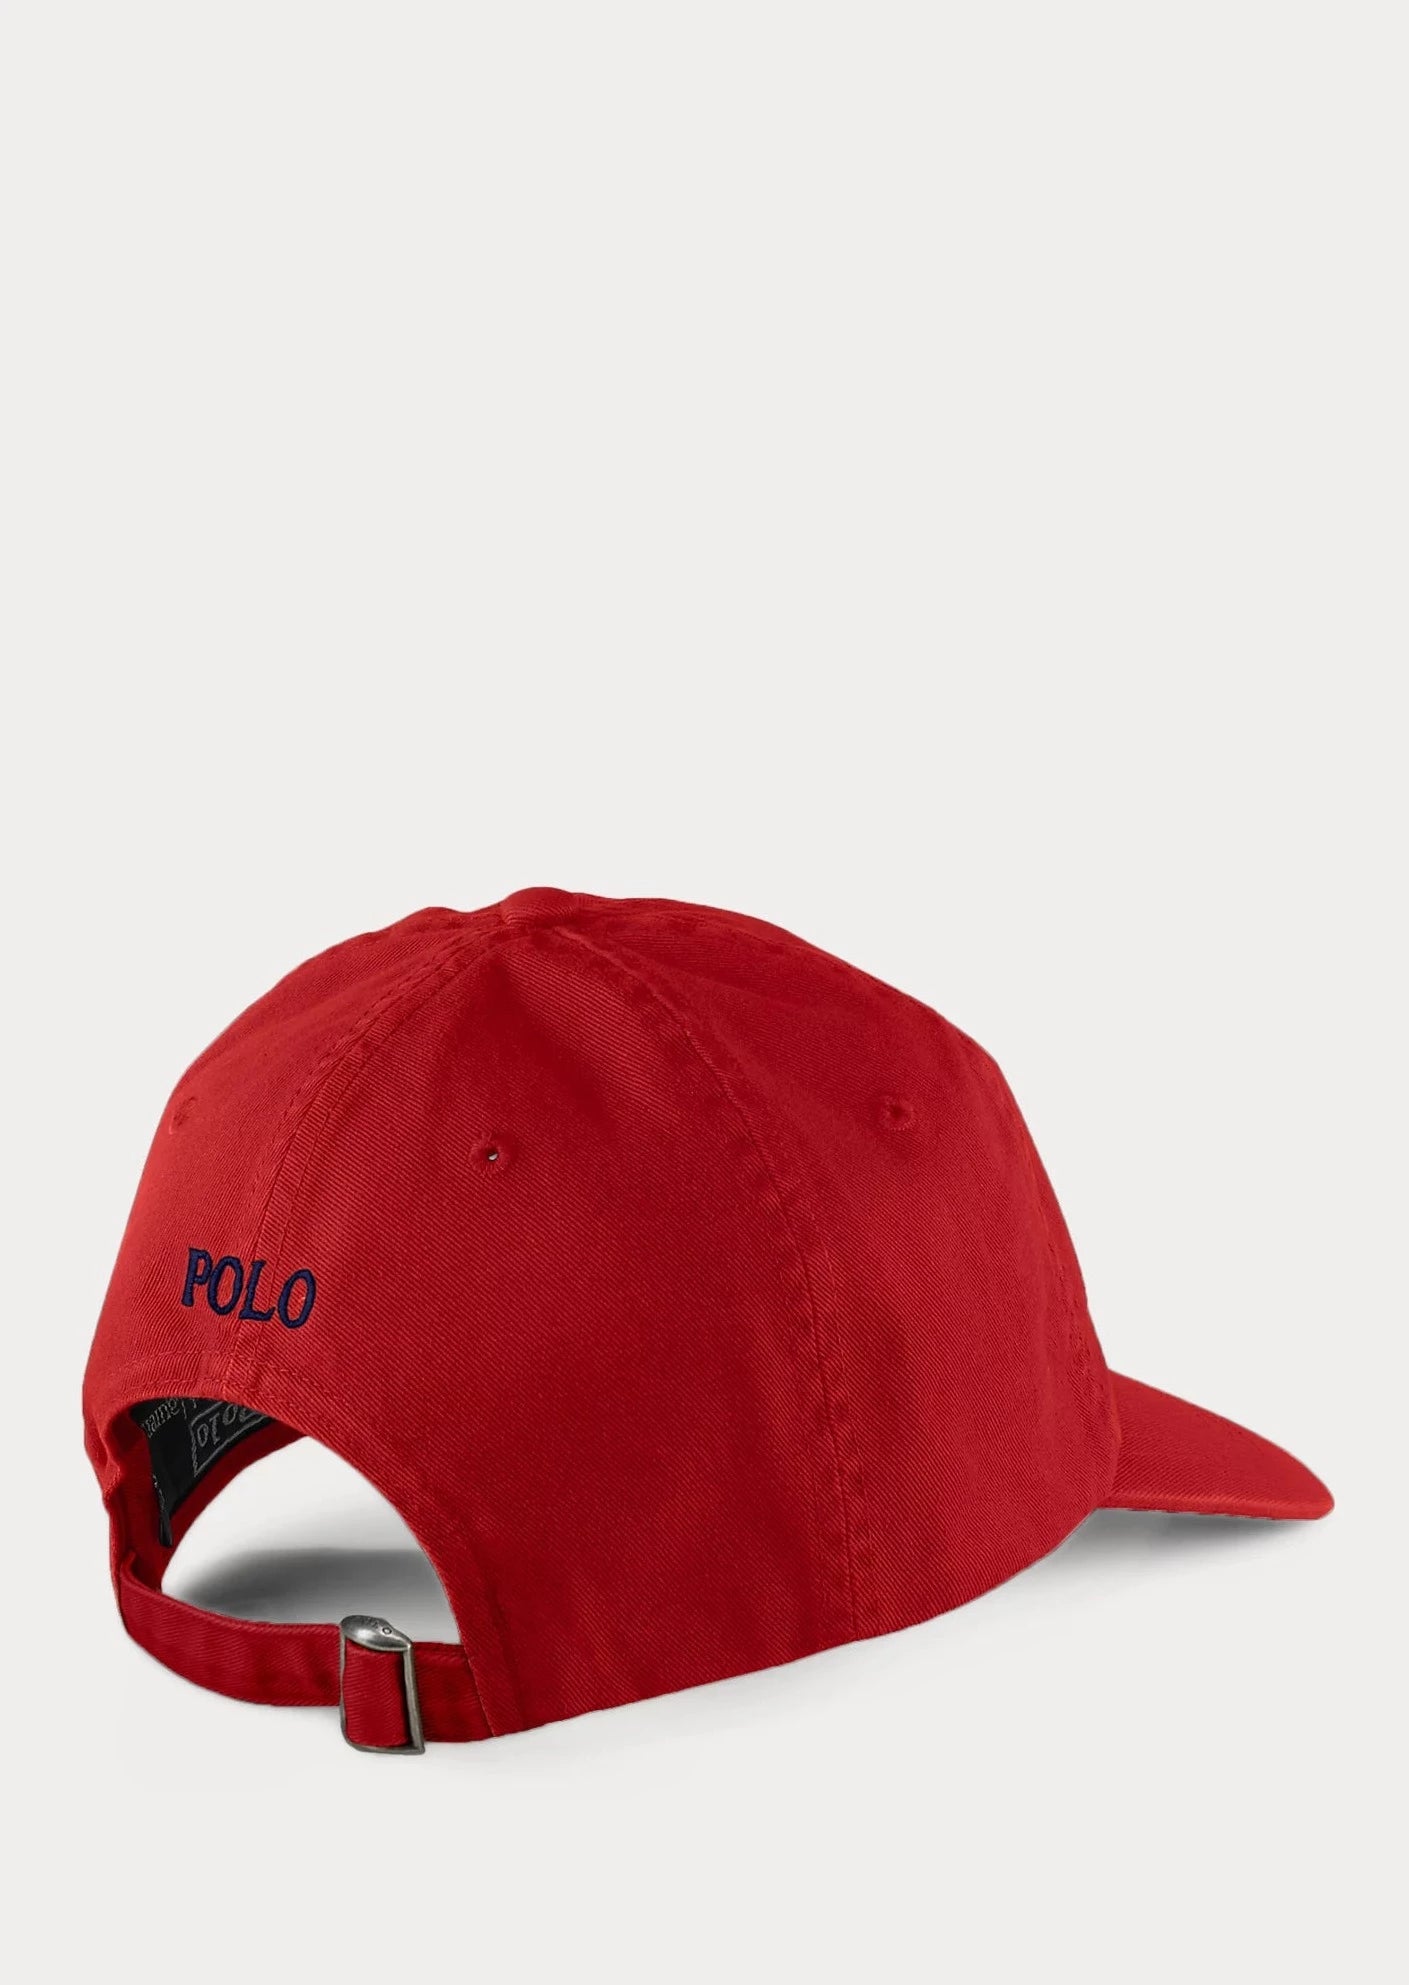 Grande taille rouges Chapeaux et Casquettes pour Homme